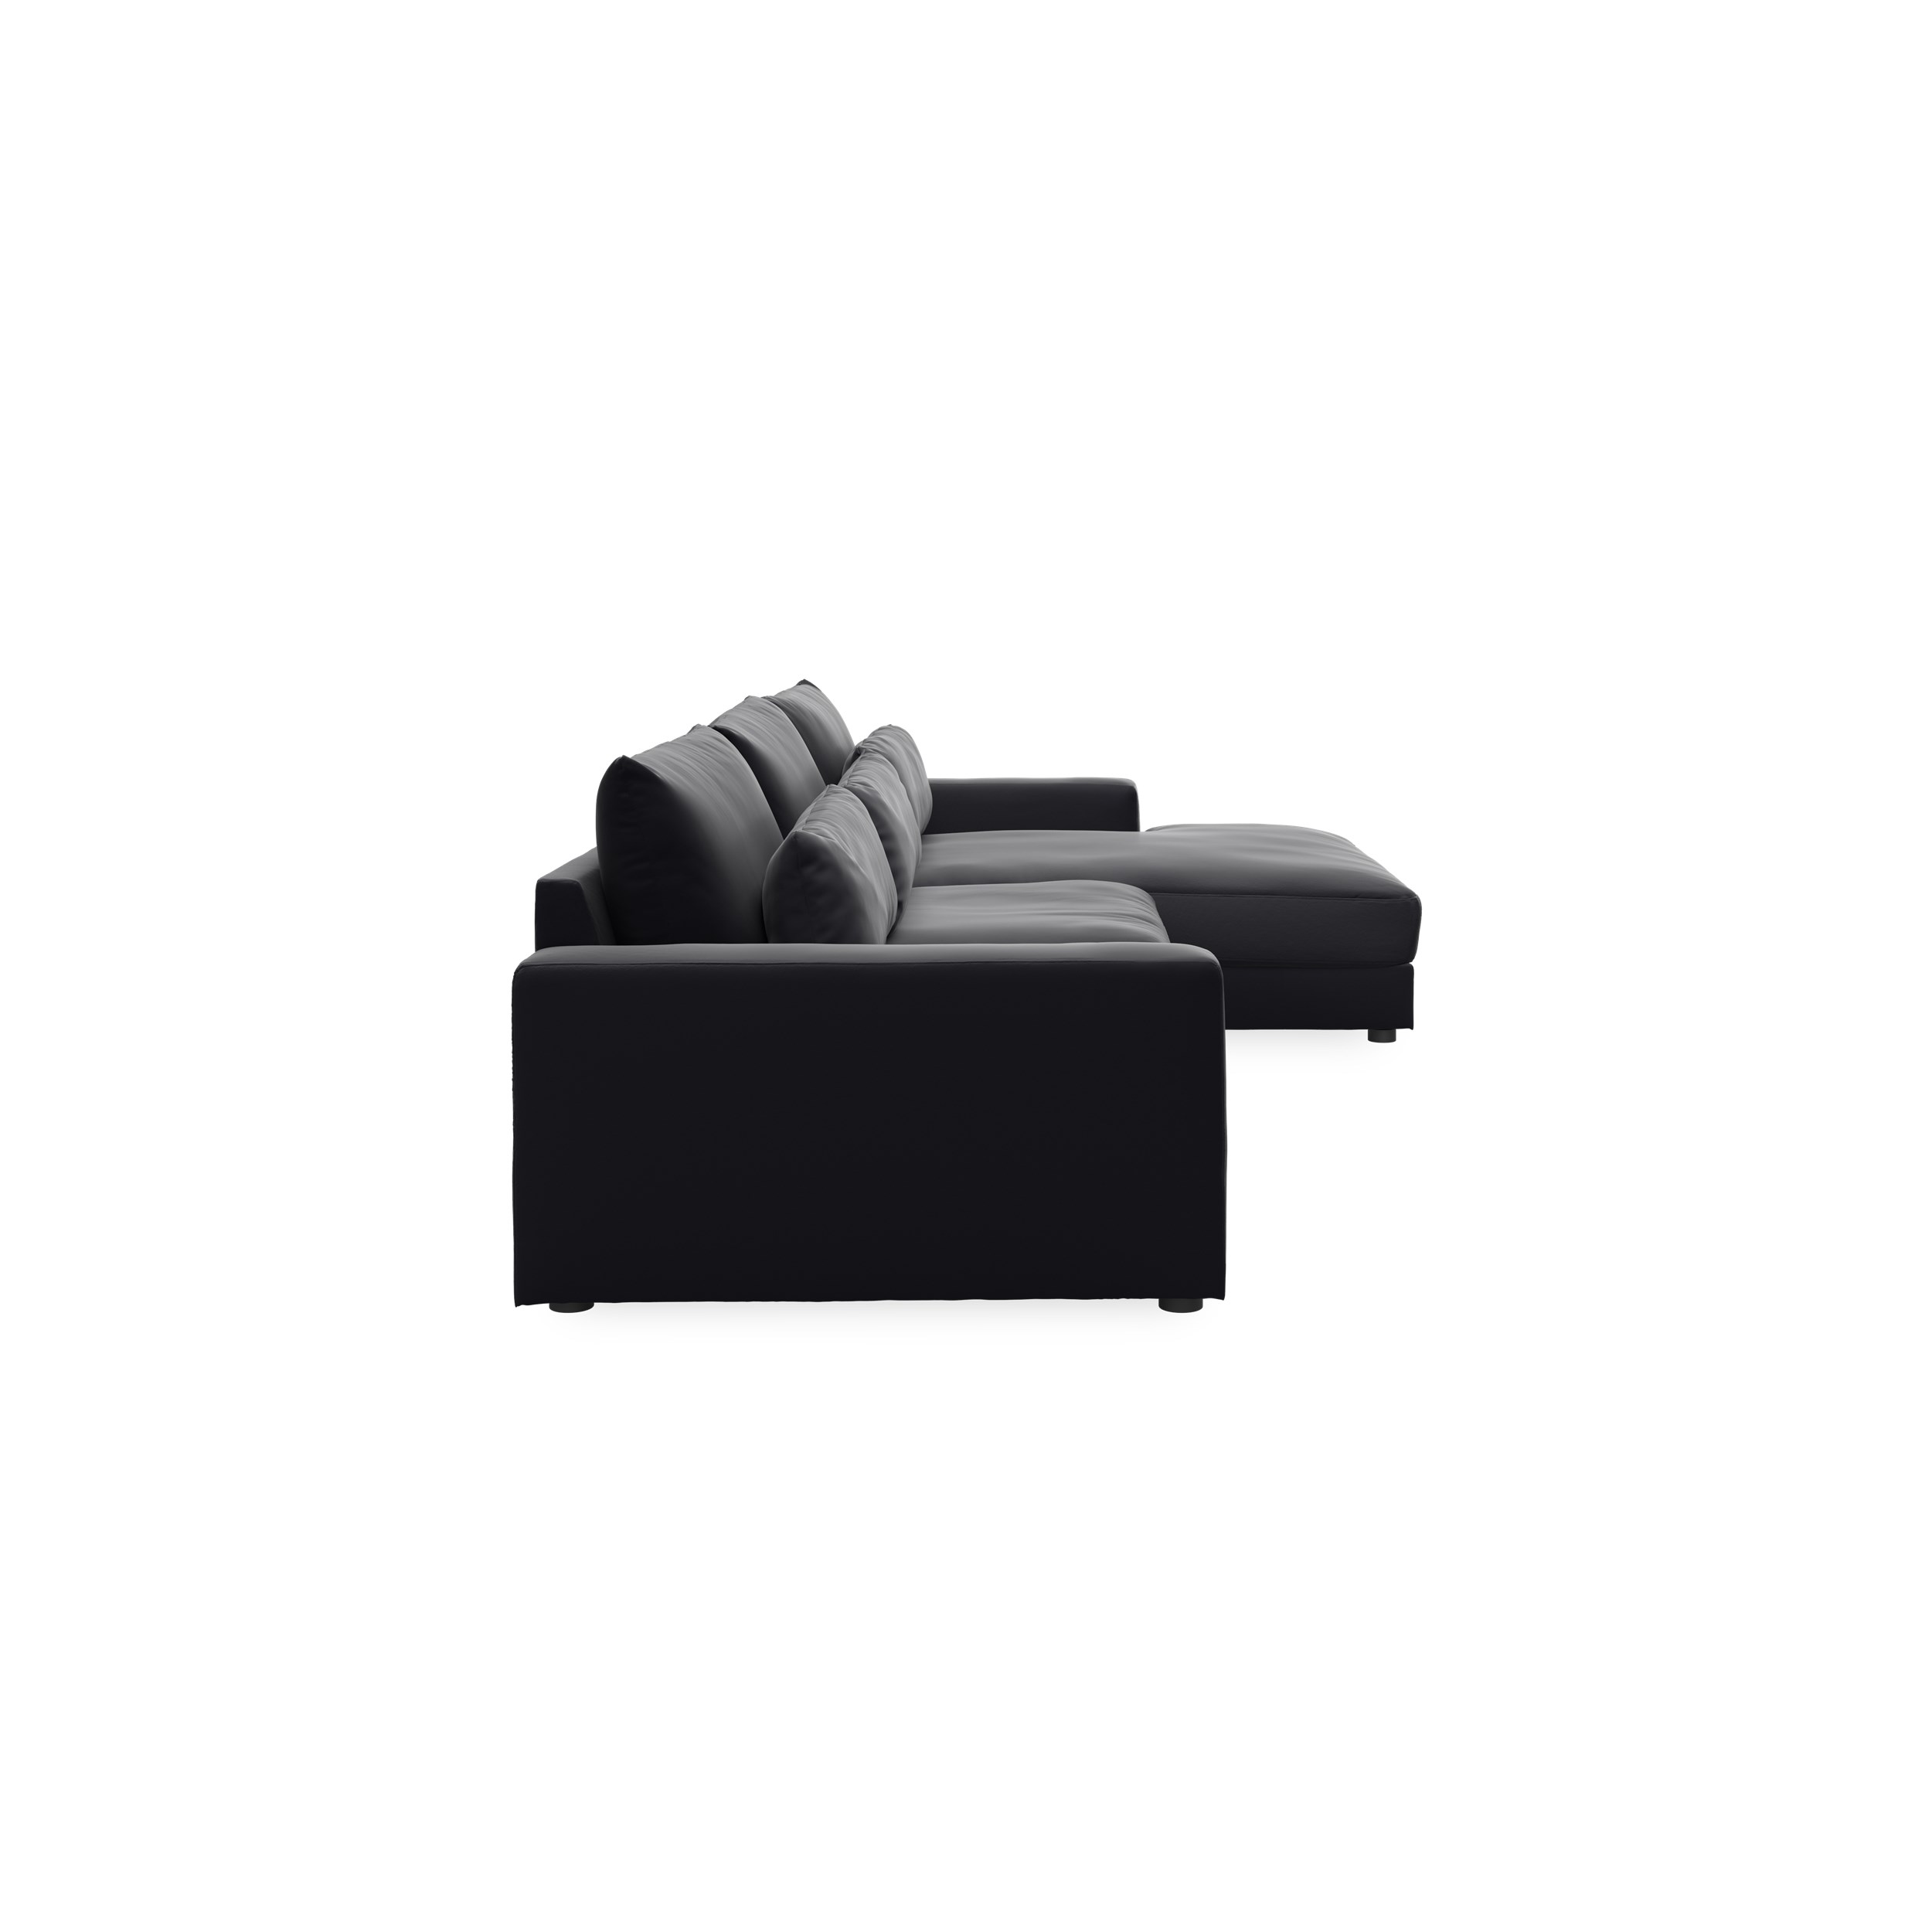 Halmstad högervänd soffa med schäslong - Black läder/split och ben i svart plast